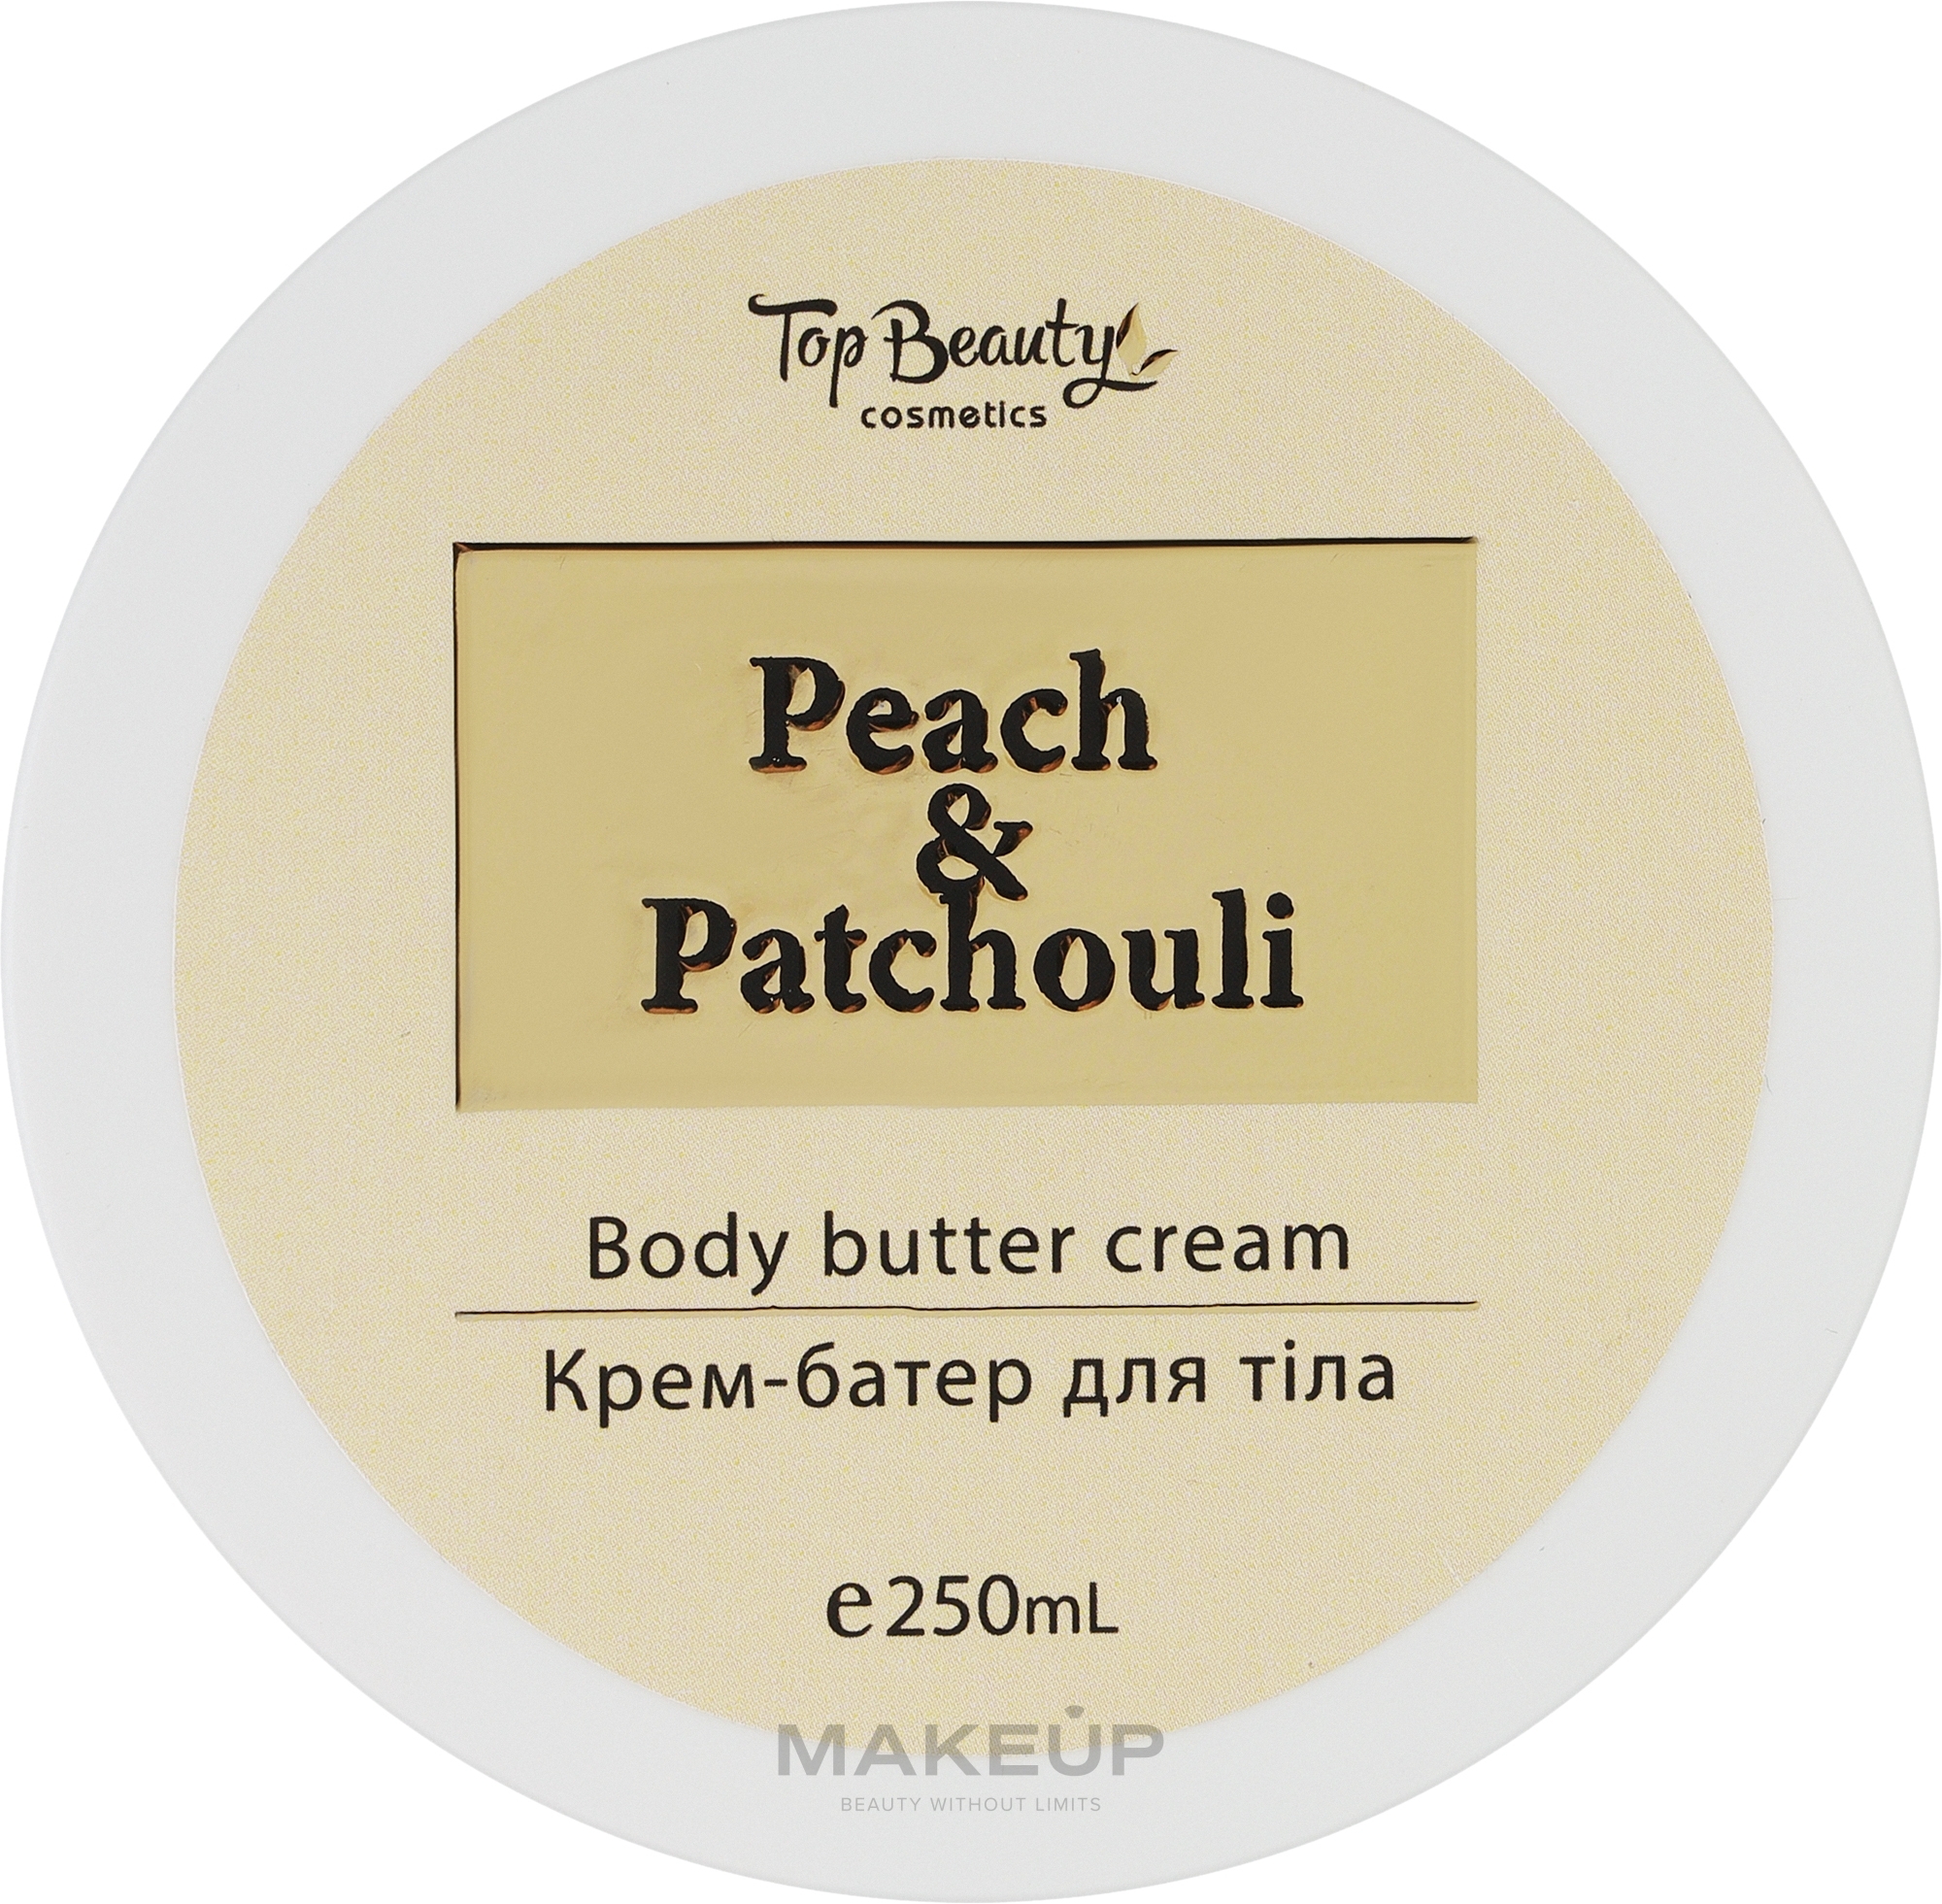 Крем-батер для рук і тіла - Top Beauty Peach Patchouli — фото 250ml